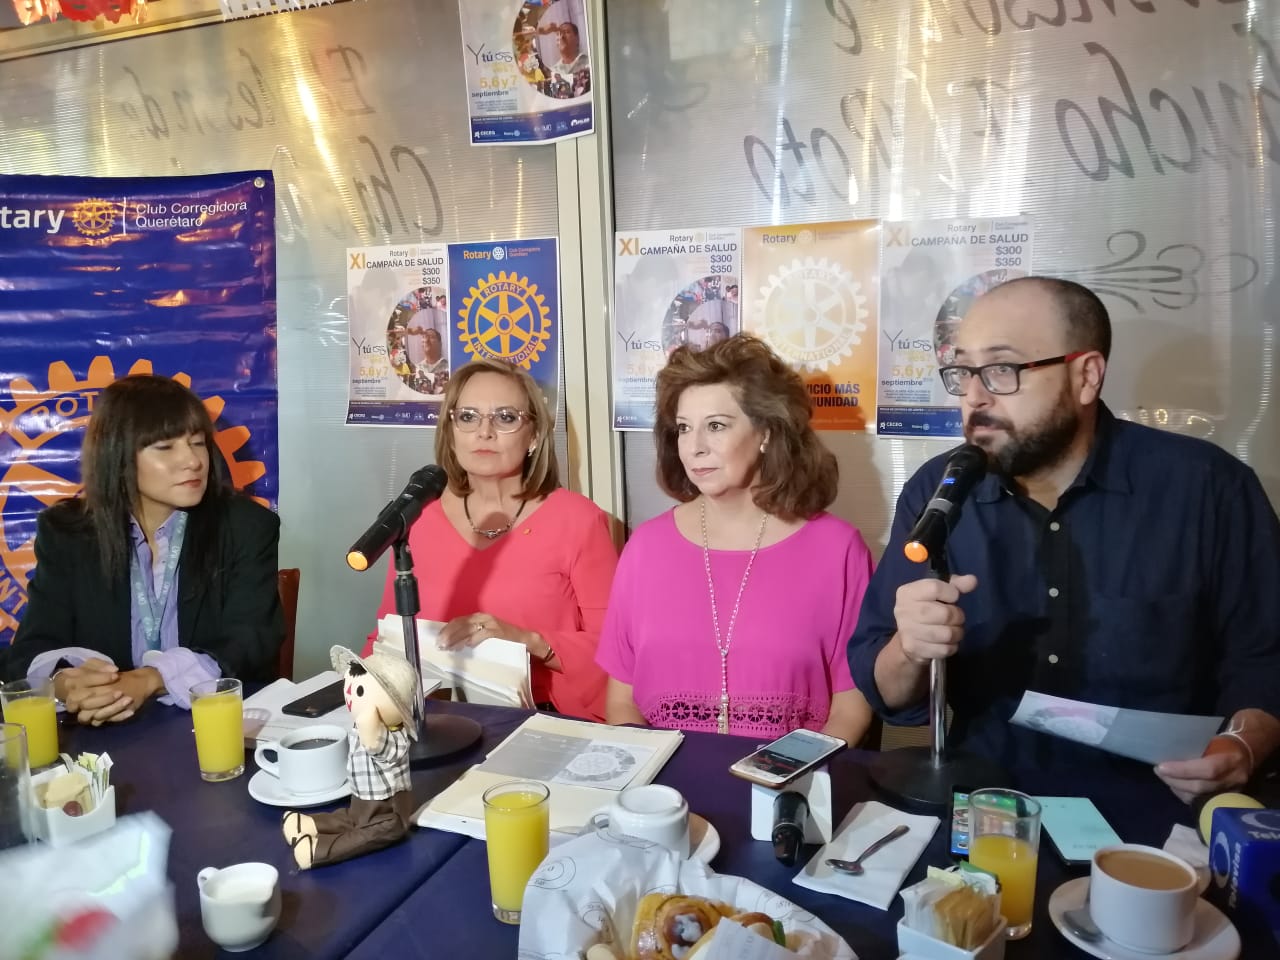 Club Rotario de Corregidora anuncia Campaña de Salud - RR Noticias